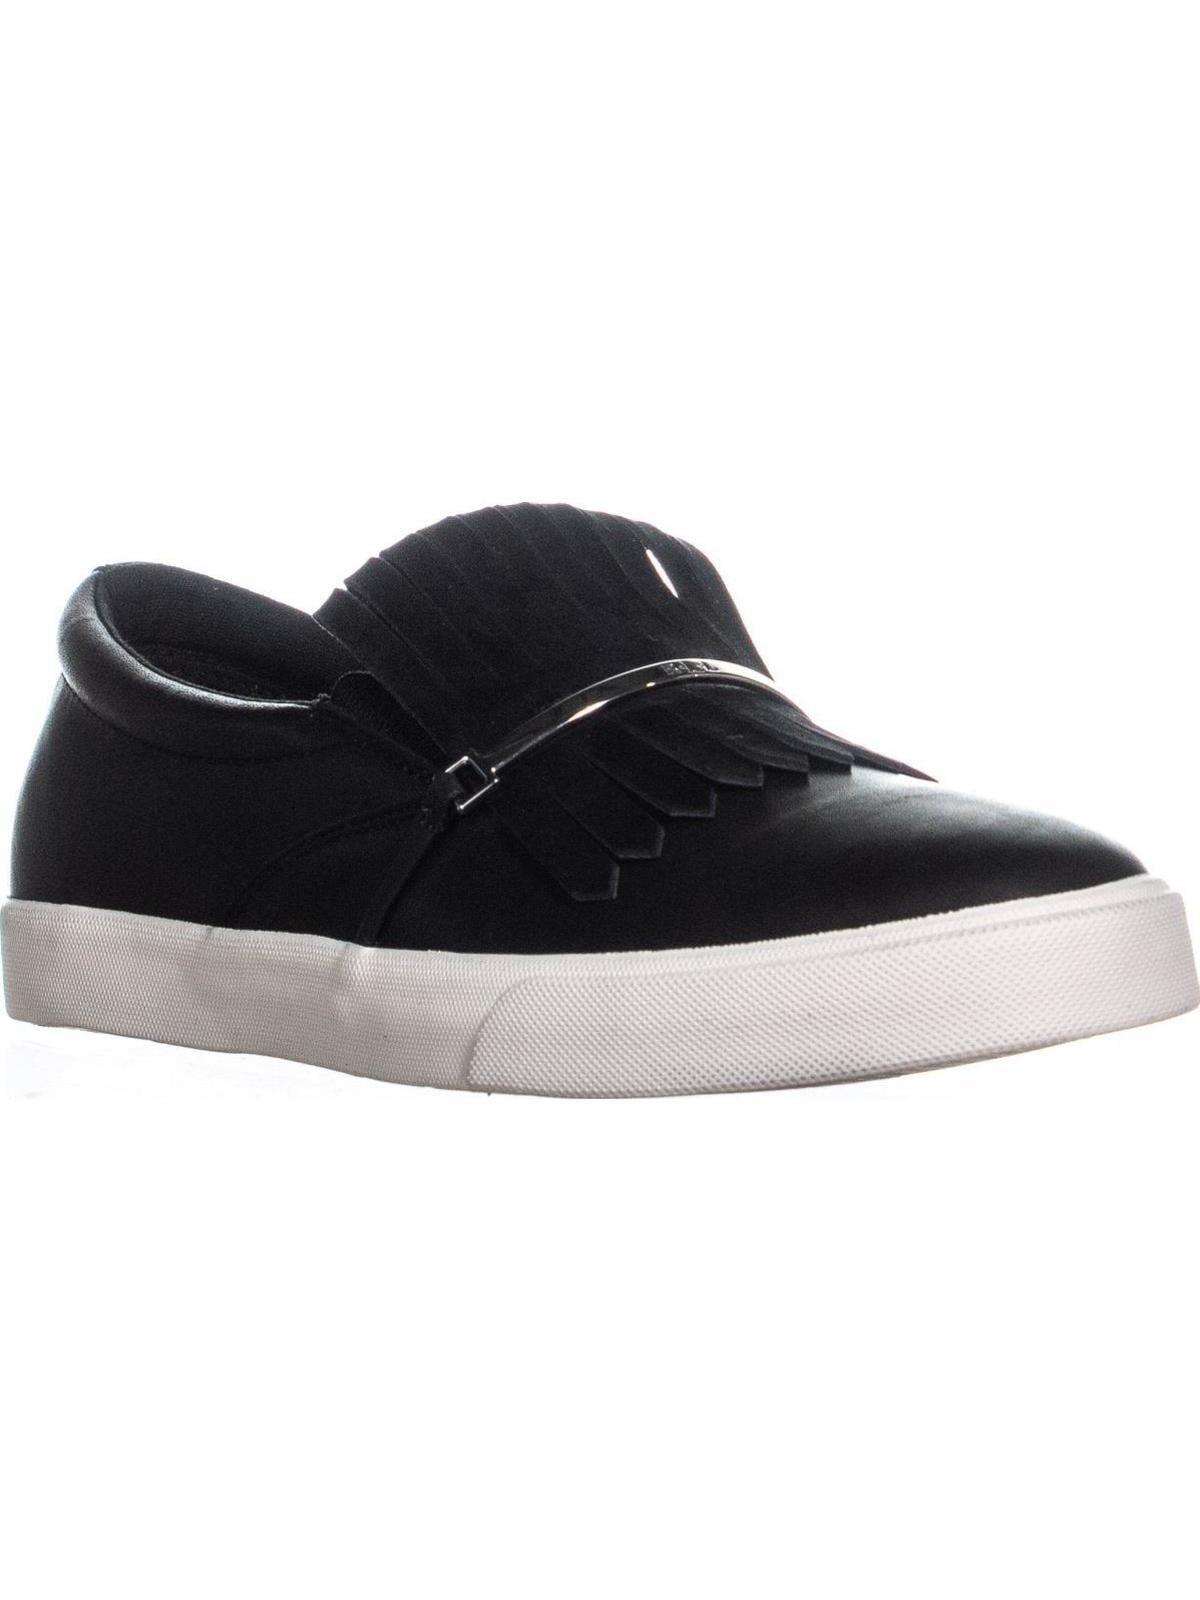 Lauren Ralph Lauren Reanna Slip On Tassel Sneakers, Black Walmart.com